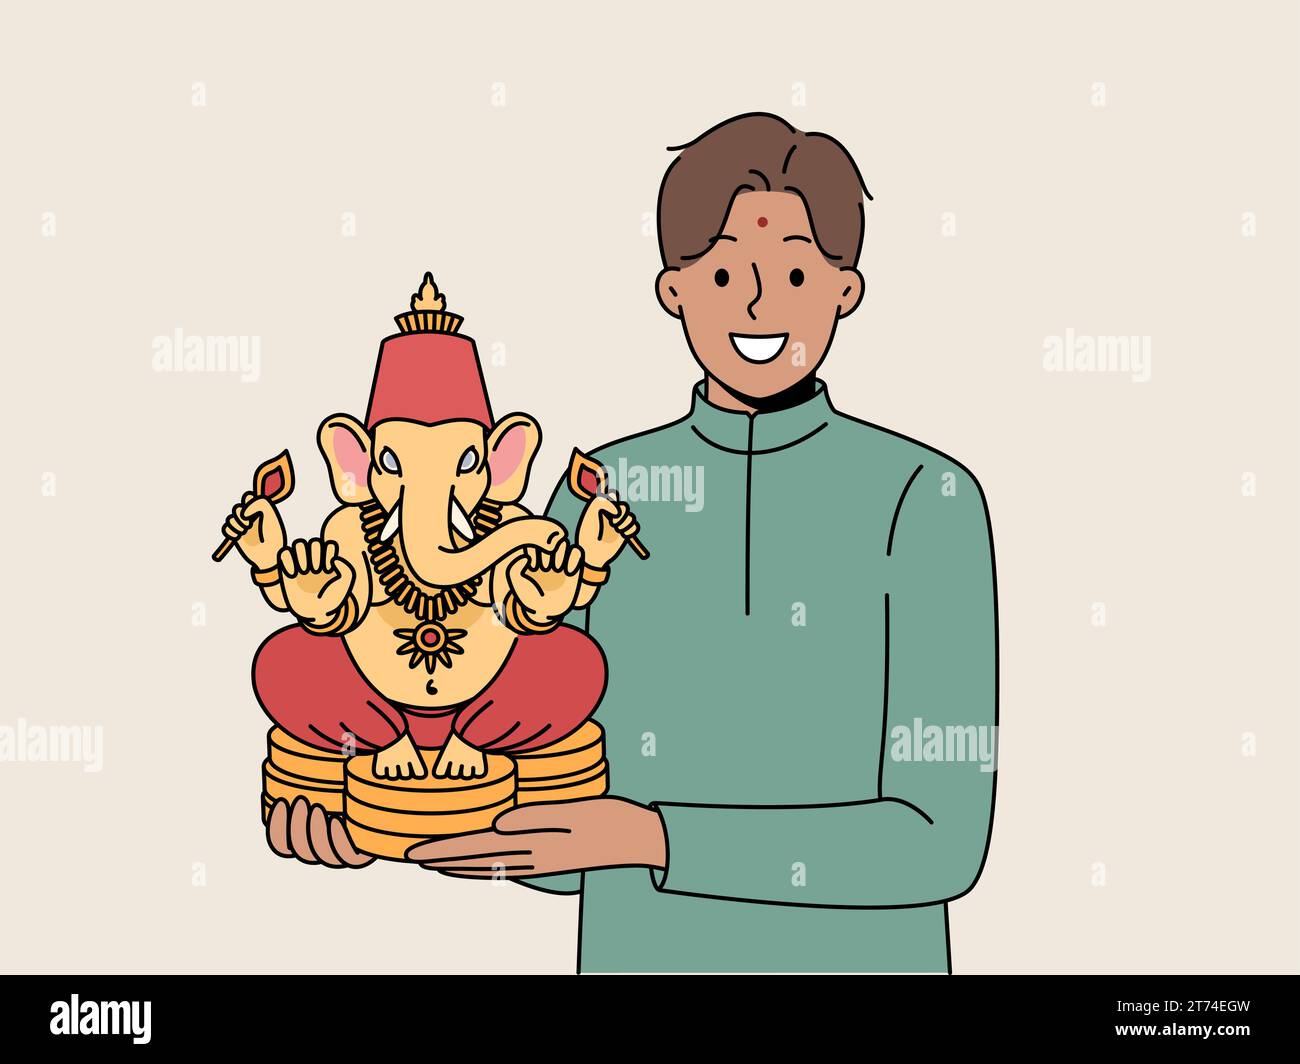 L'uomo indiano tiene la figurina di Lord Ganesha e sorride, dimostrando un amuleto nazionale che porta fortuna e successo. Lord Ganesha fatto di ceramiche nelle mani di Guy invitante al festival della cultura hindi Illustrazione Vettoriale